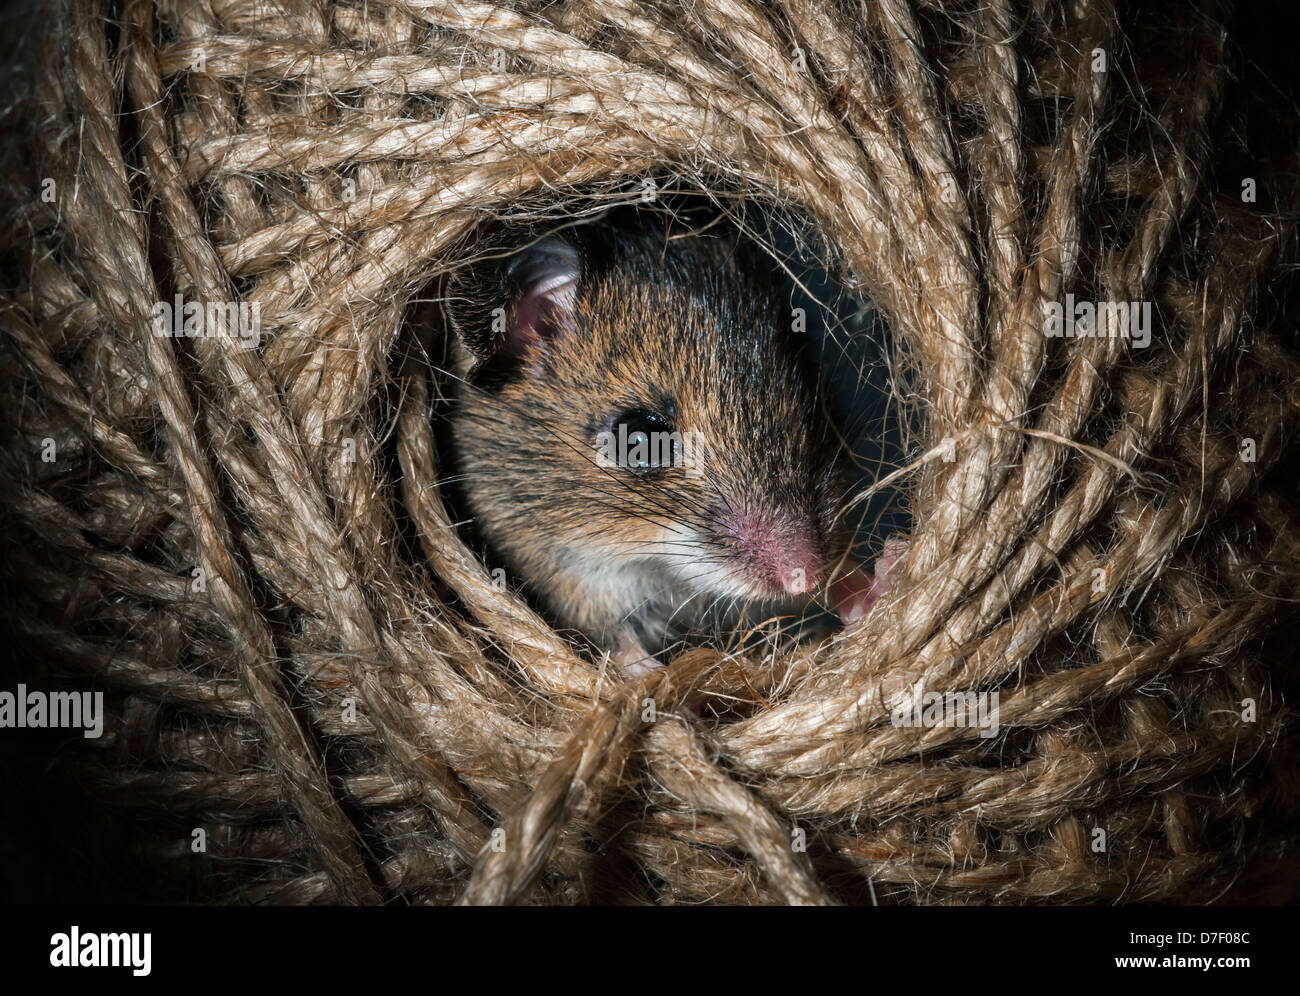 Ratón de madera escondido en una bola de hilo Foto de stock